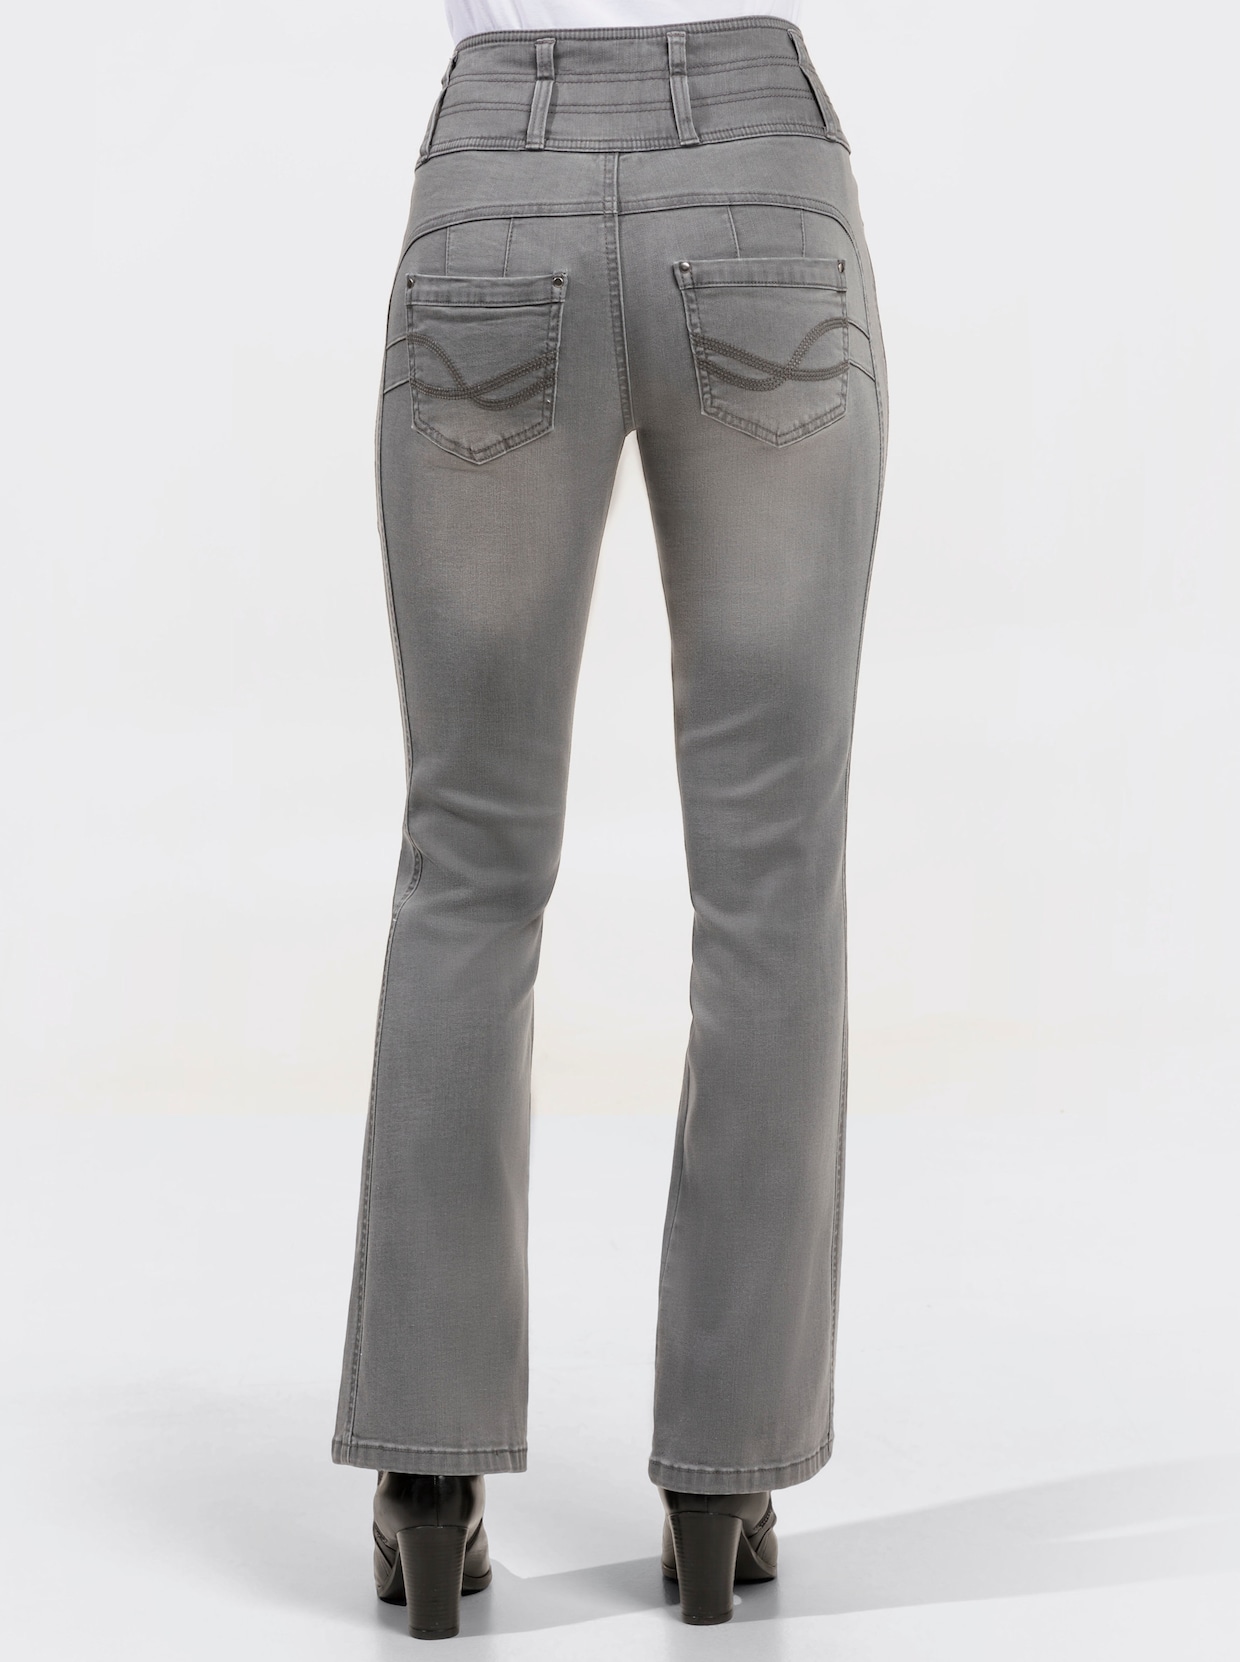 Jean 5 poches - gris clair-denim